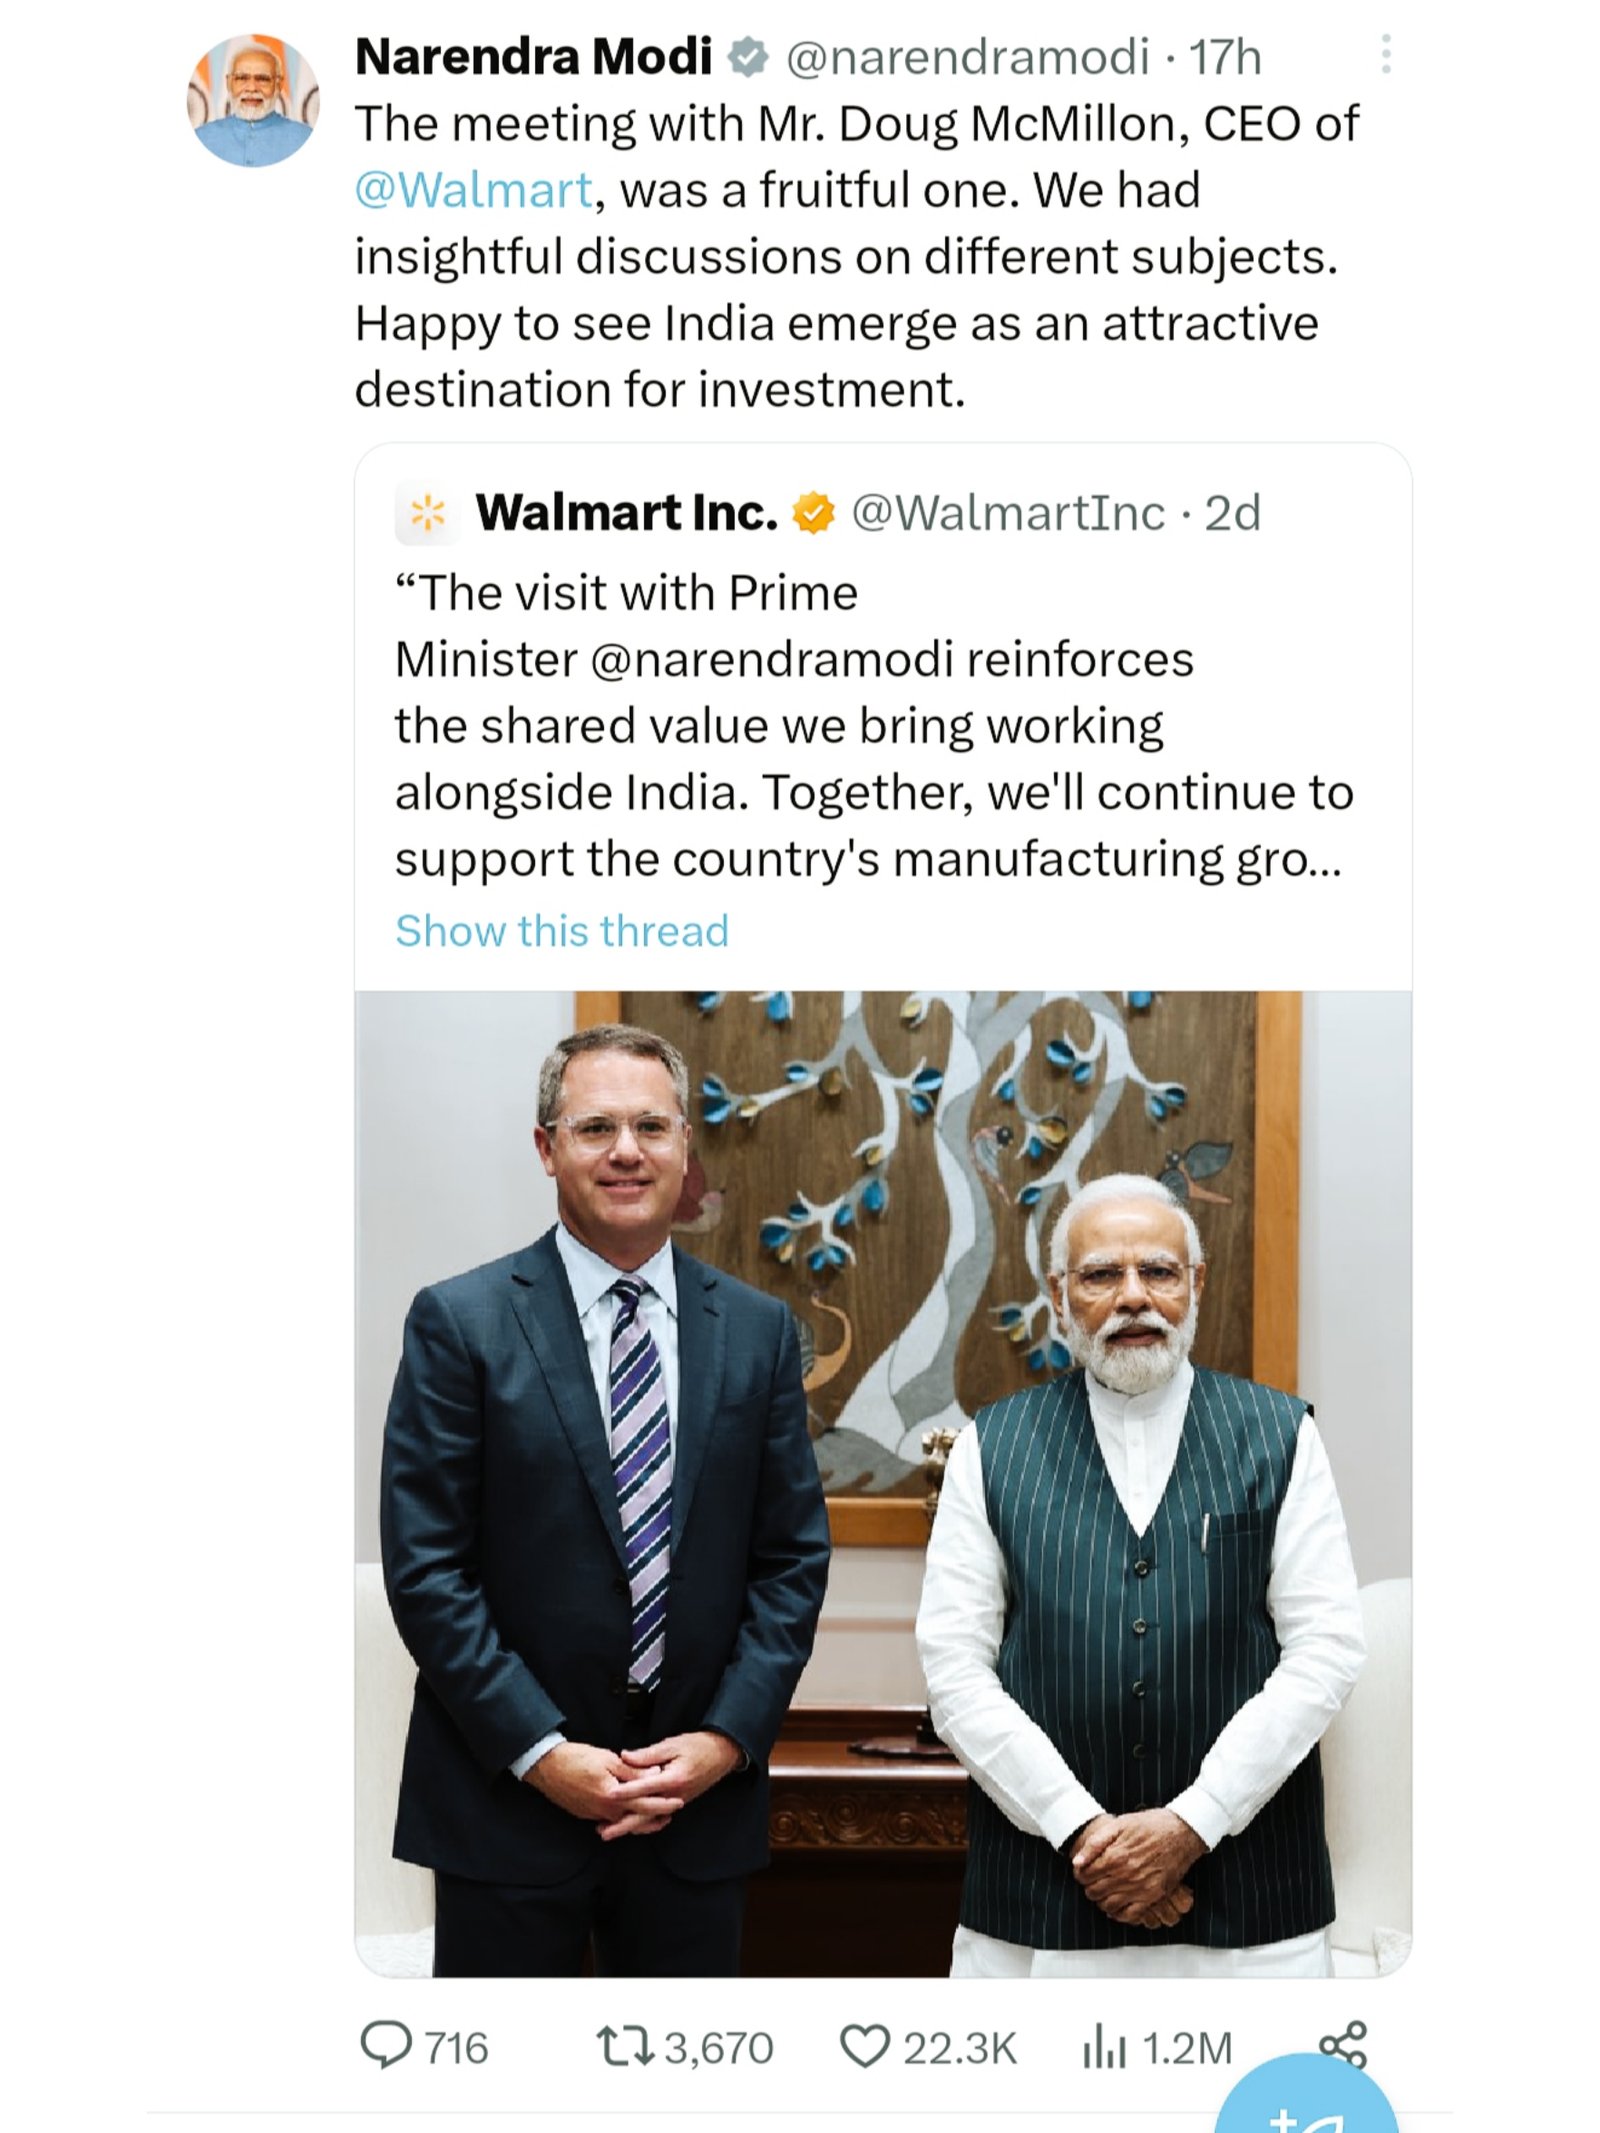 वॉलमार्ट के सीईओ मैकमिलन और प्रधानमंत्री नरेंद्र मोदी की निवेश को लेकर के फोटो की ट्विटर पर शेयर